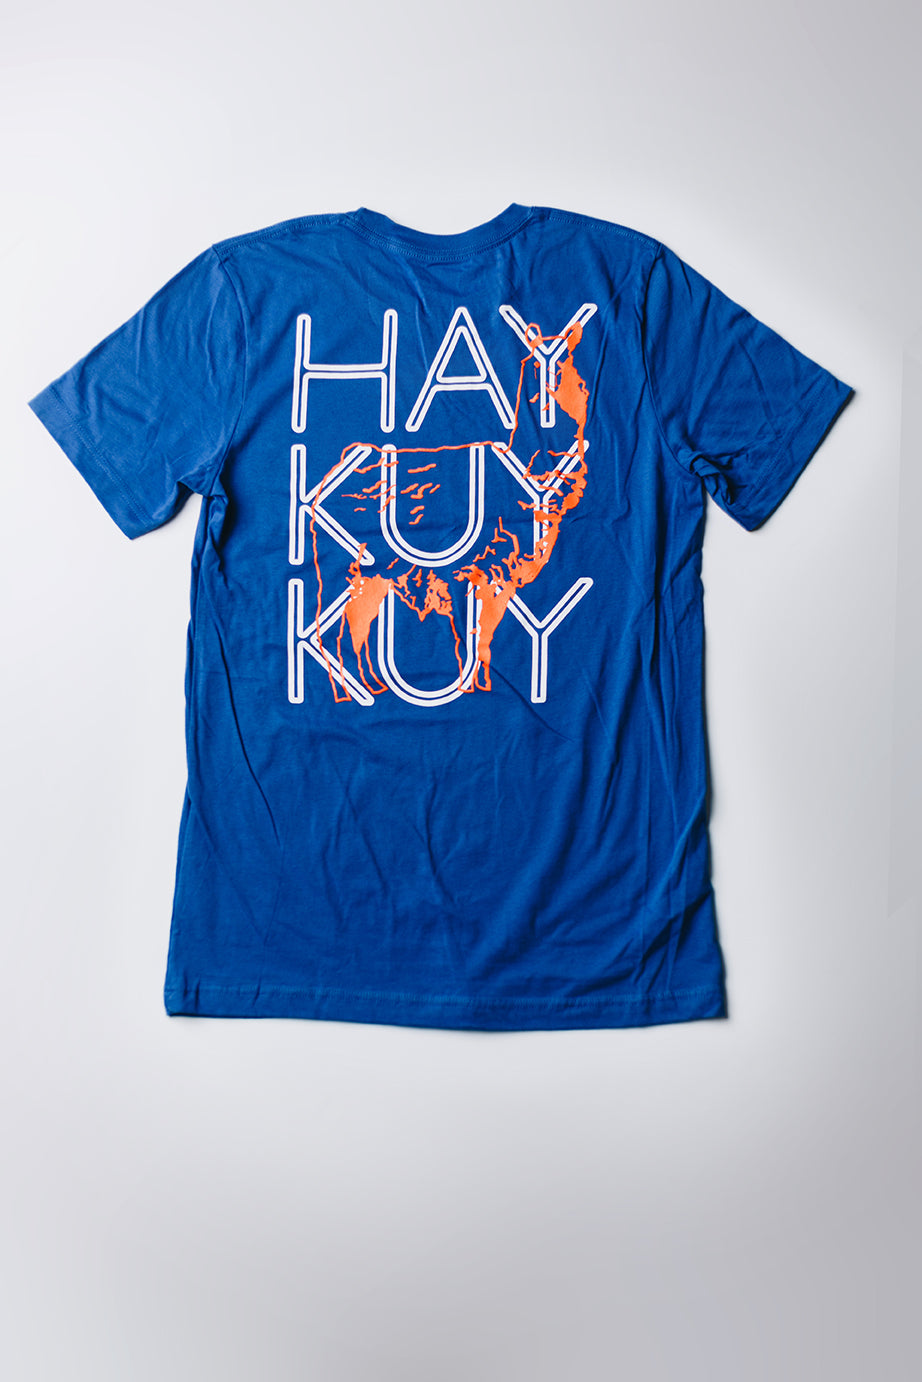 Haykuykuy - Blue